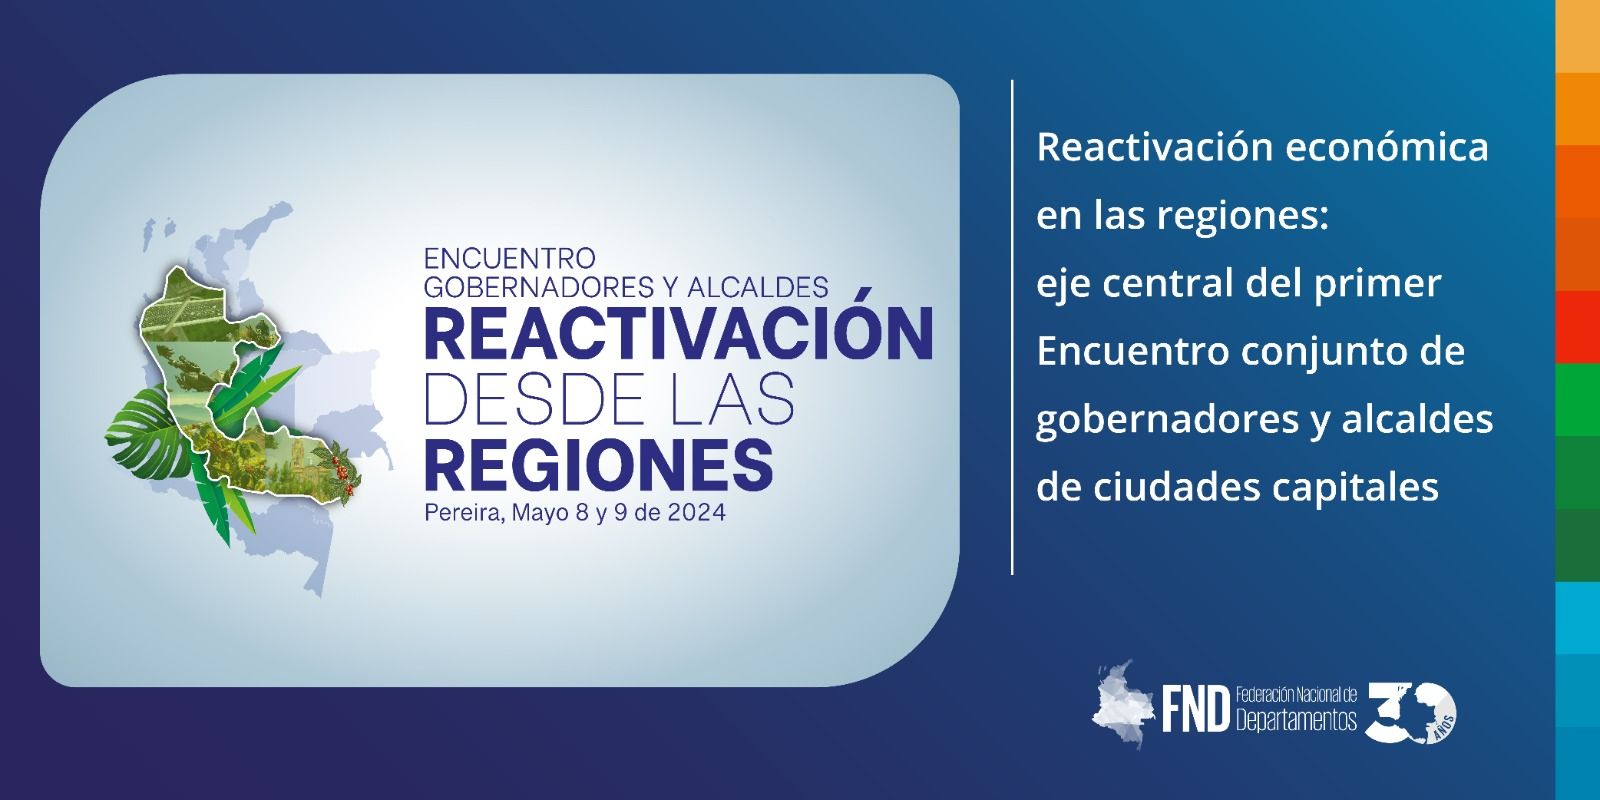 image Reactivación económica en las regiones: eje central del primer Encuentro conjunto de gobernadores y alcaldes de ciudades capitales